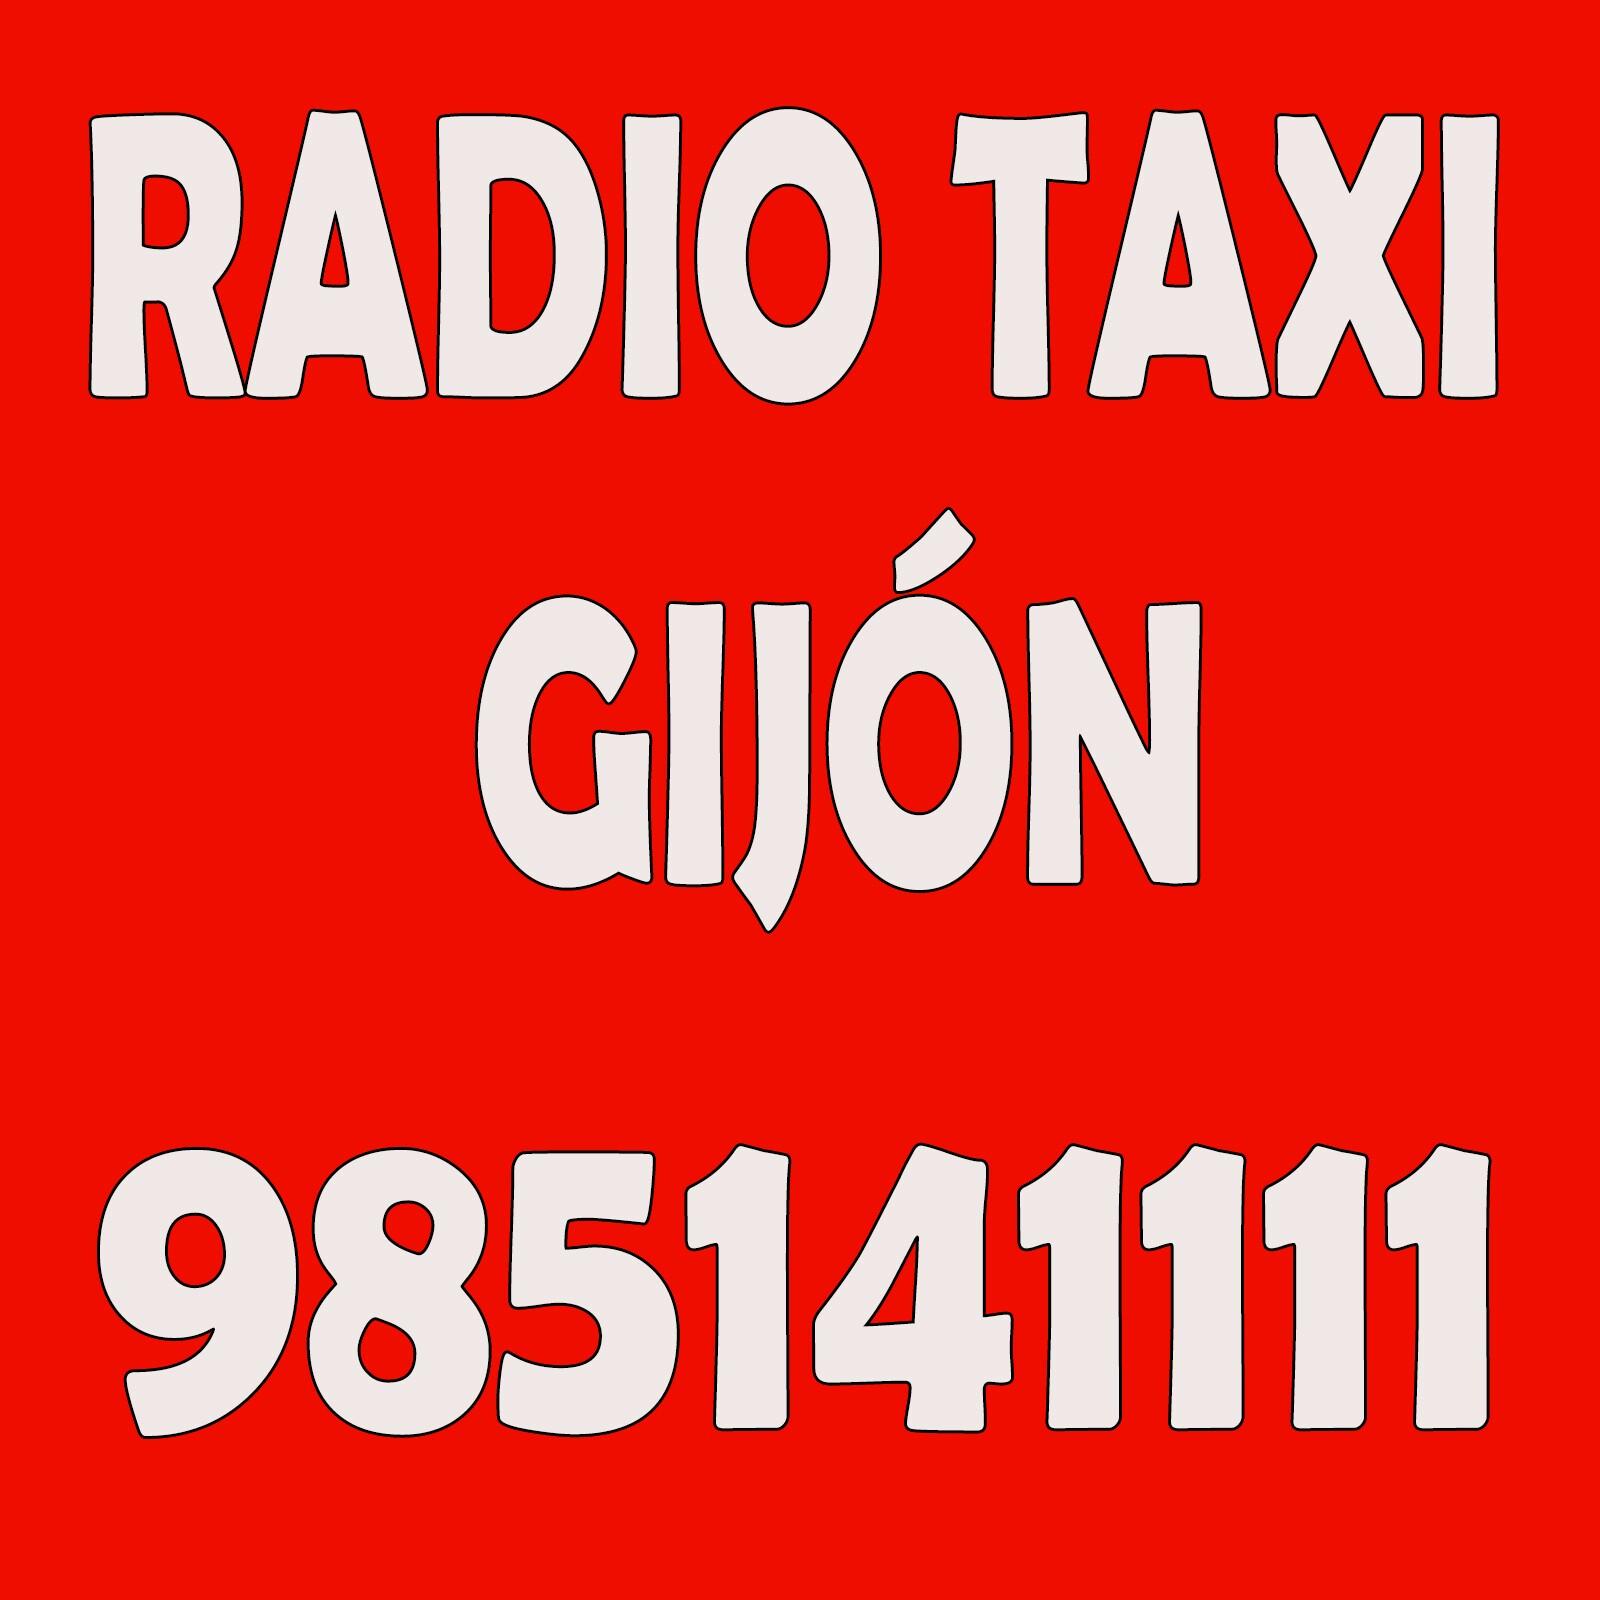 RADIO TAXI GIJON es la compañia de taxi por excelencia del Concejo de Gijón. Tu taxi preferido. TLF.985141111-SERVICIO 24H.